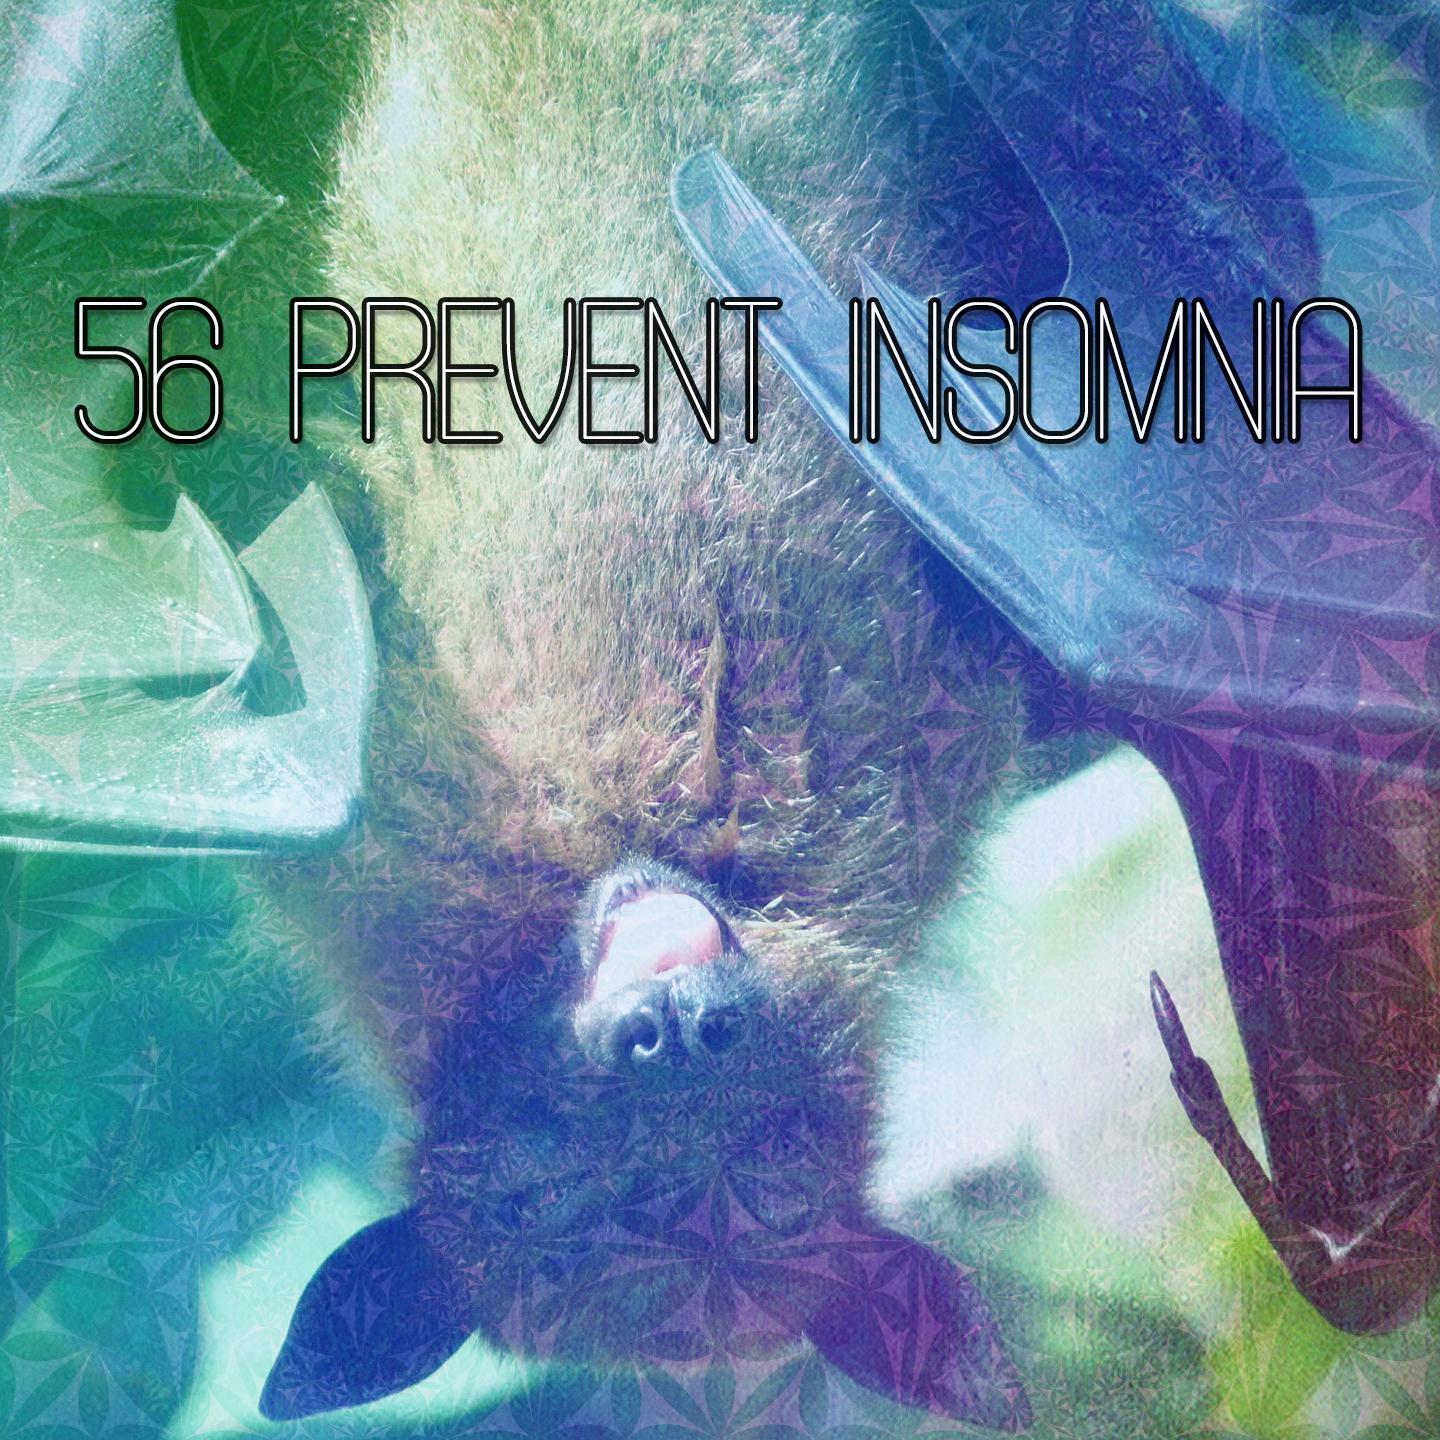 56 Prevent Insomnia